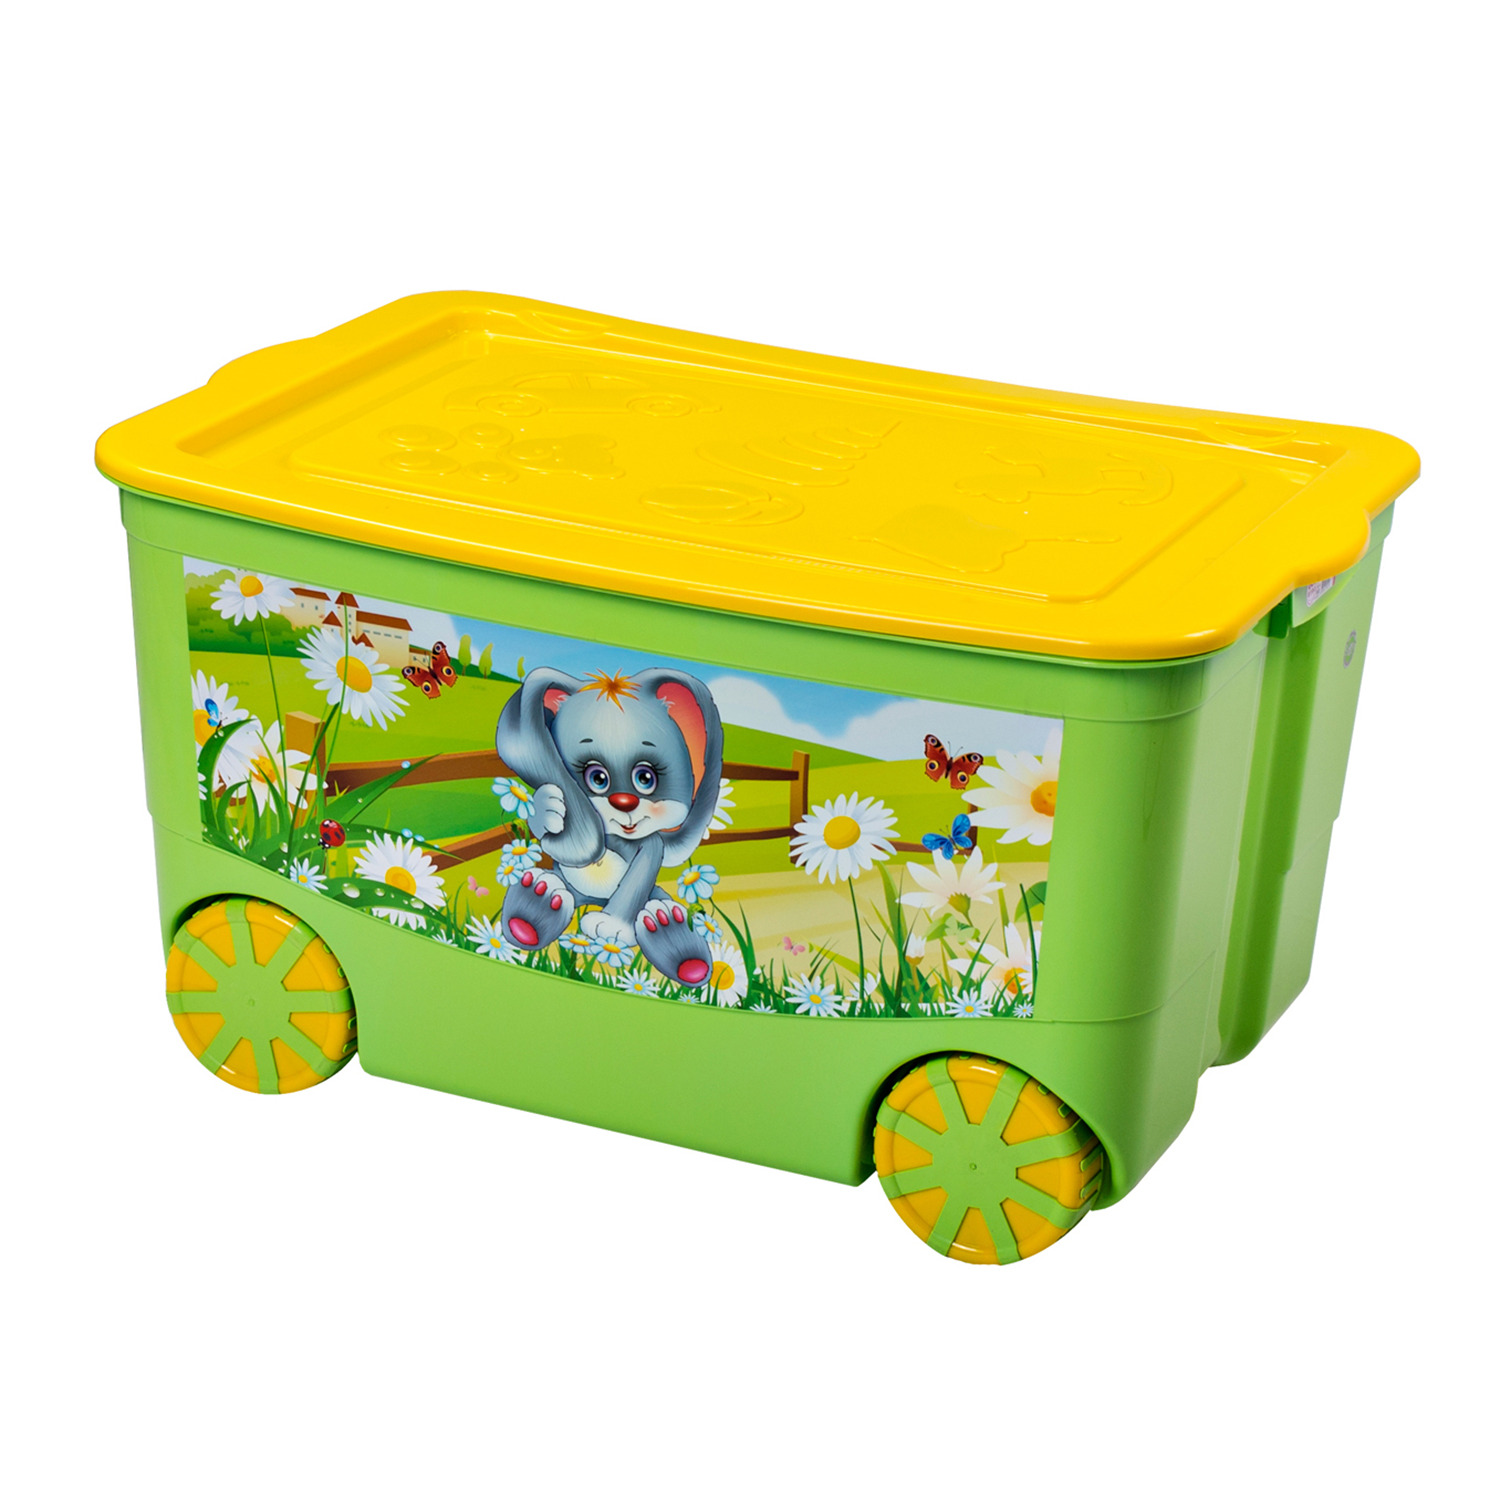 Ящик для игрушек elfplast KidsBox на колёсах салатовый желтый - фото 1